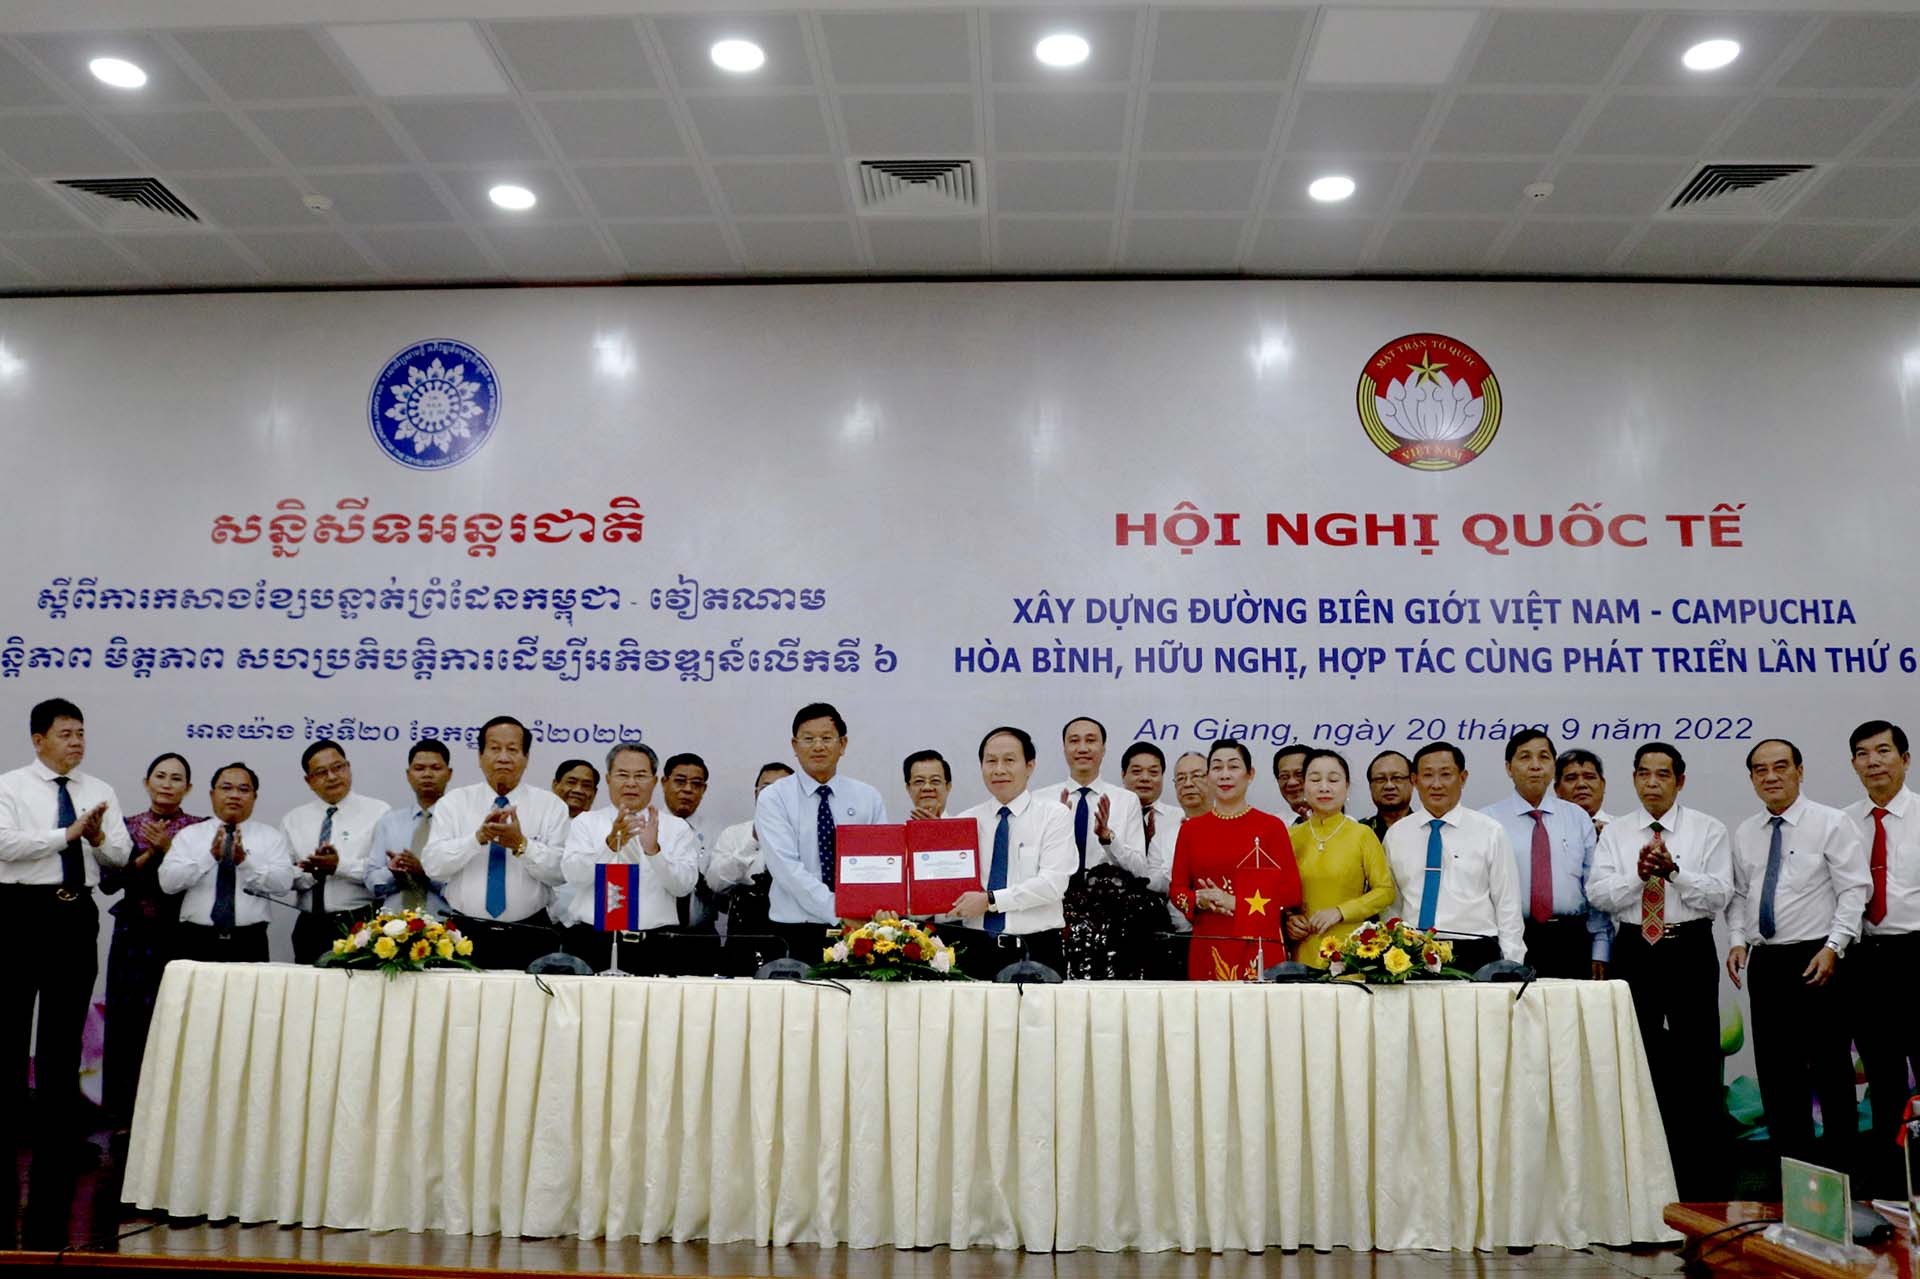 Ủy ban Trung ương Mặt trận Tổ quốc Việt Nam và Hội đồng Quốc gia Mặt trận Đoàn kết Phát triển Tổ quốc Campuchia ký Thông cáo chung Kết quả Hội nghị. (Ảnh: Chiến Khu)